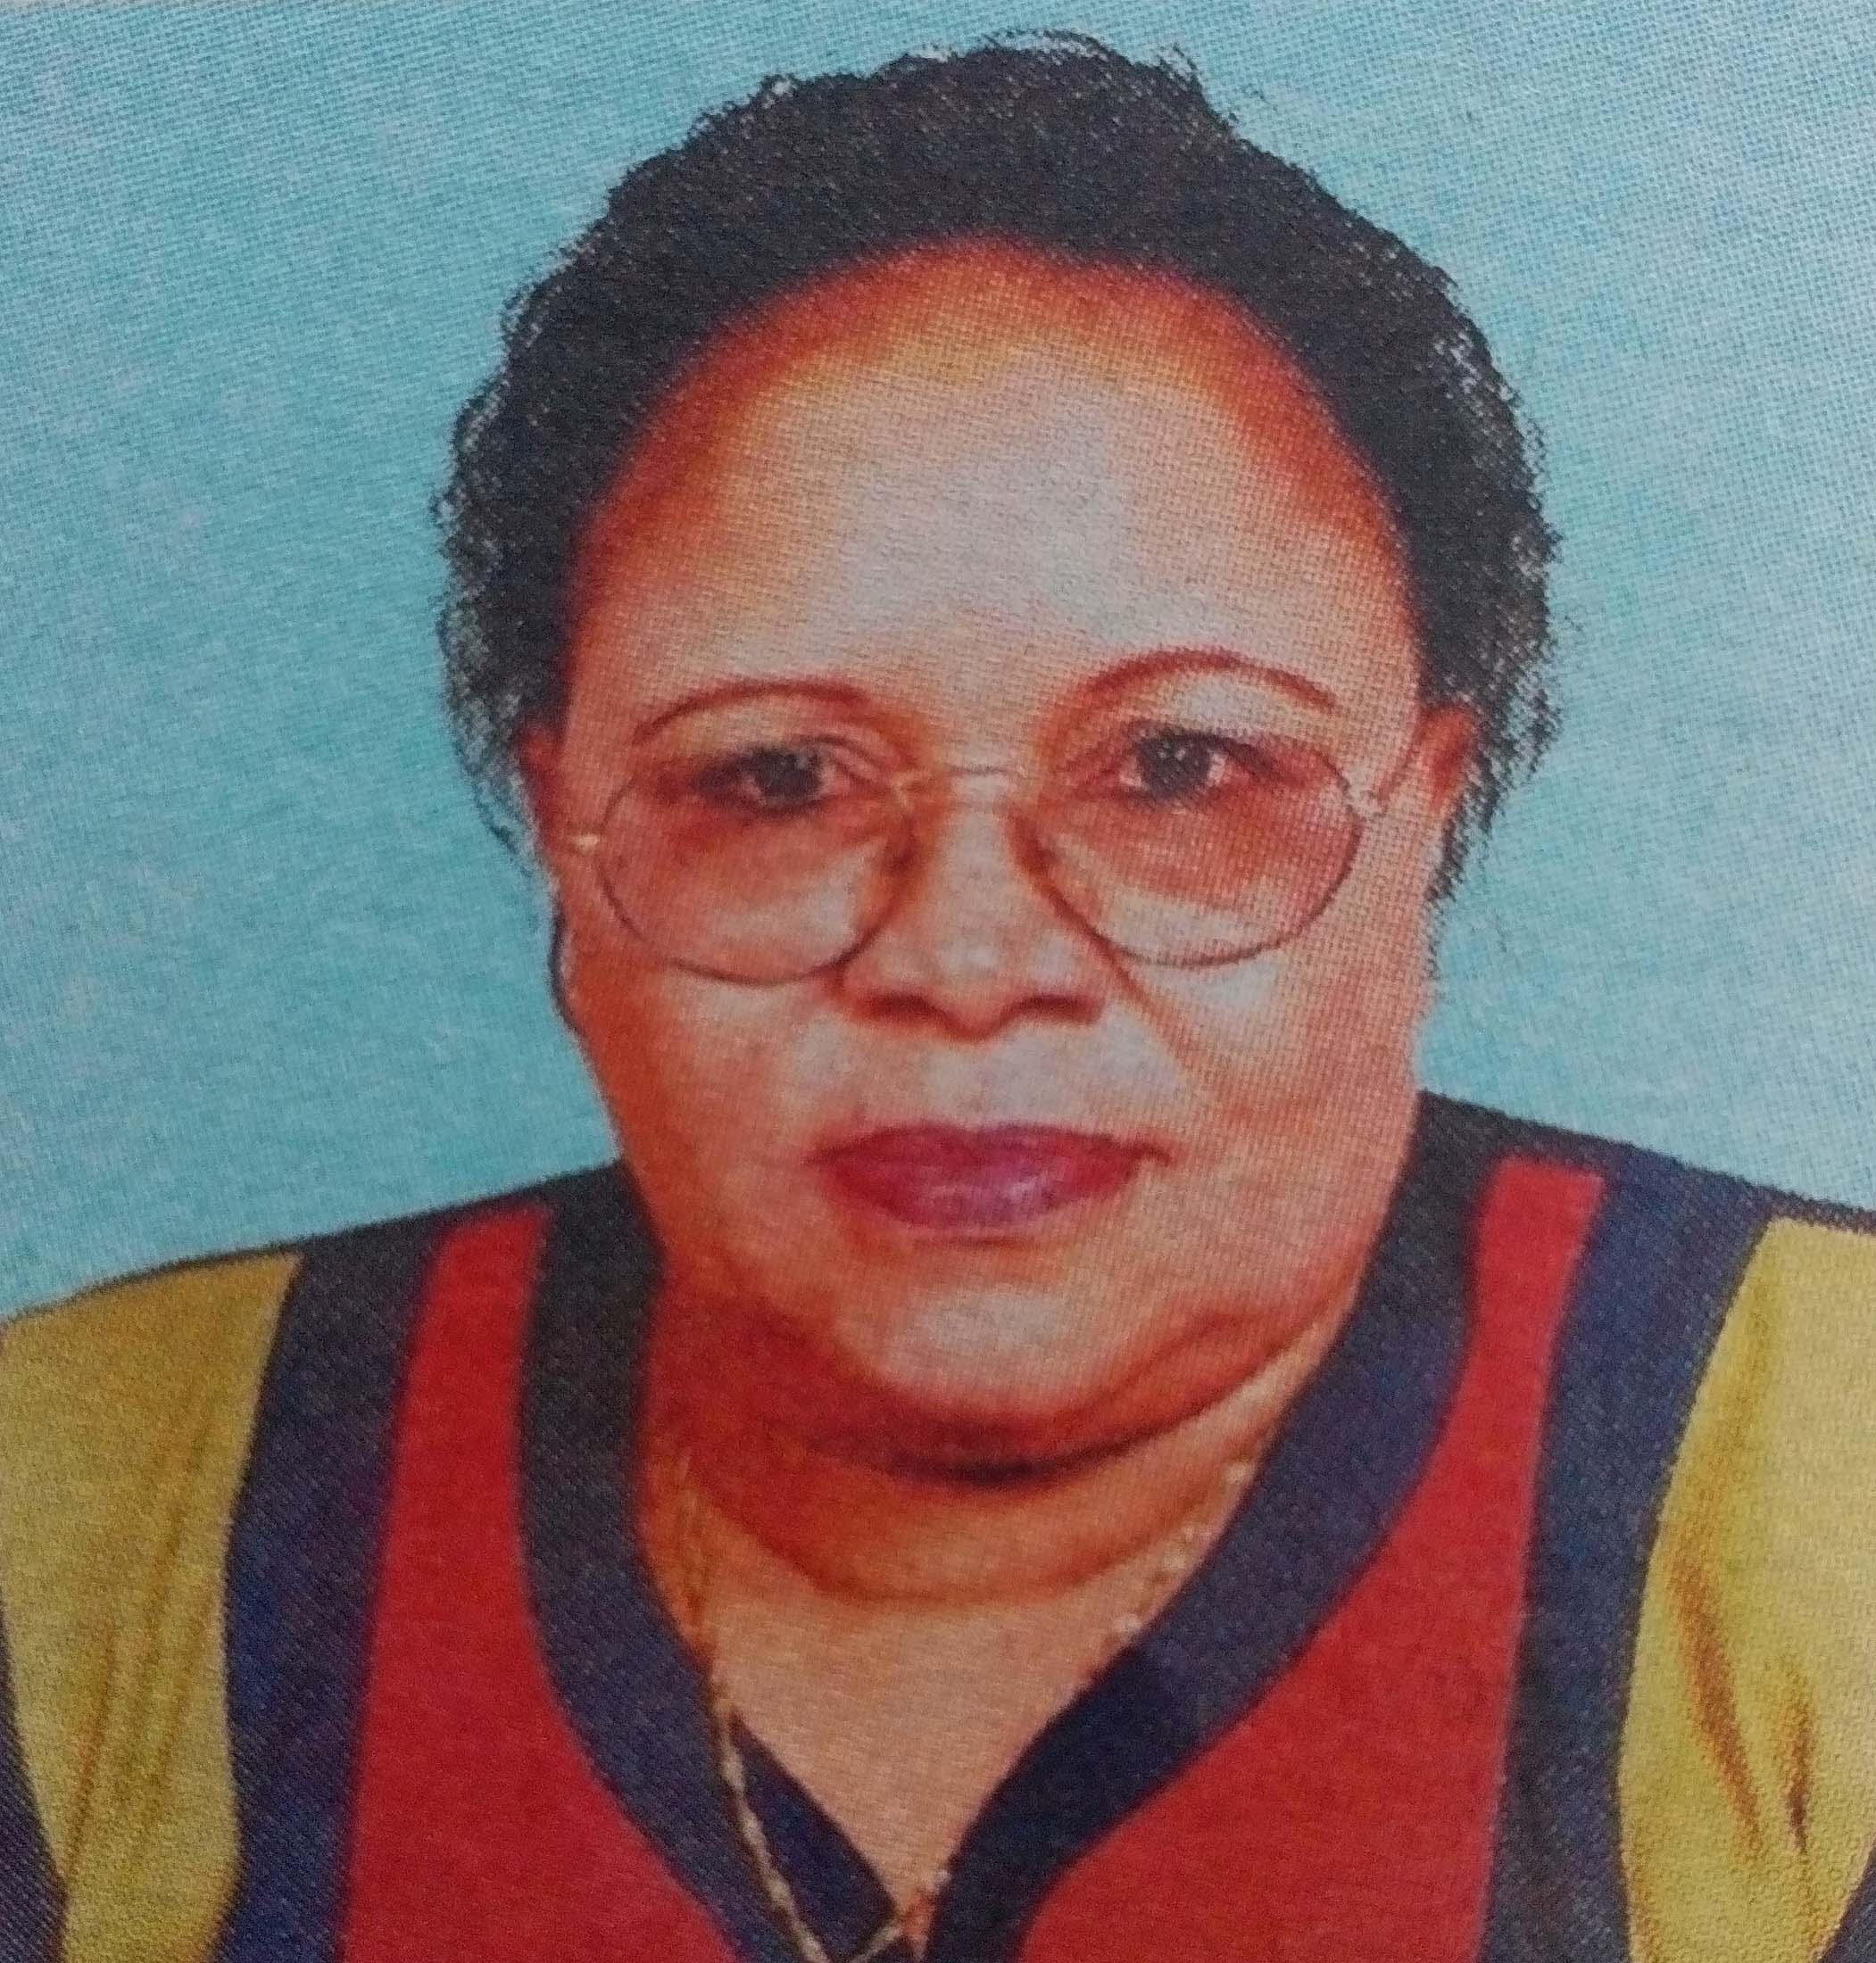 Obituary Image of Felister Lyimo Odondi